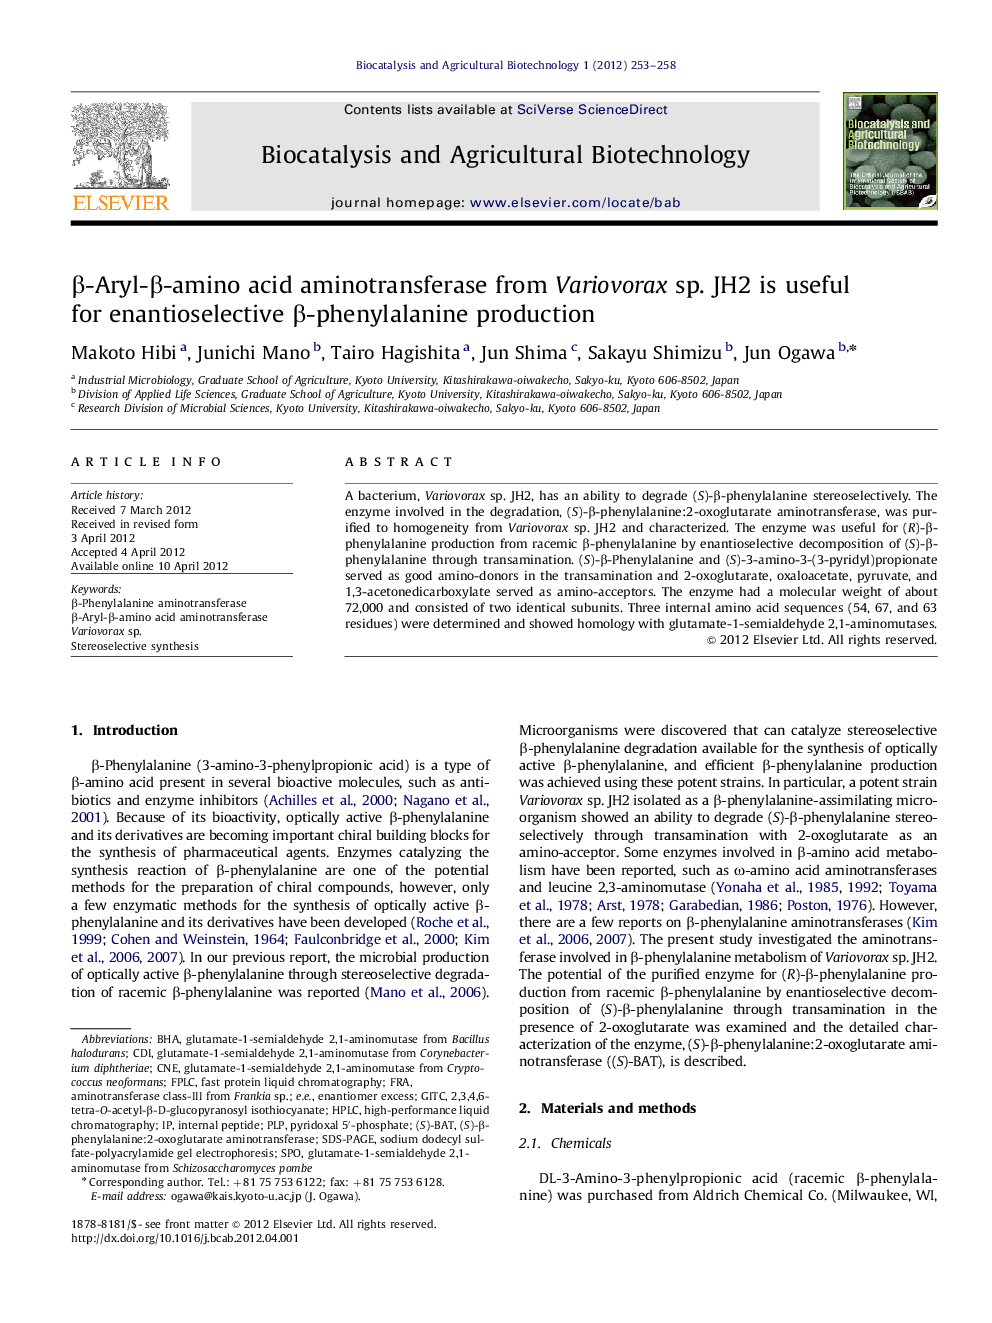 β-Aryl-β-amino acid aminotransferase from Variovorax sp. JH2 is useful for enantioselective β-phenylalanine production